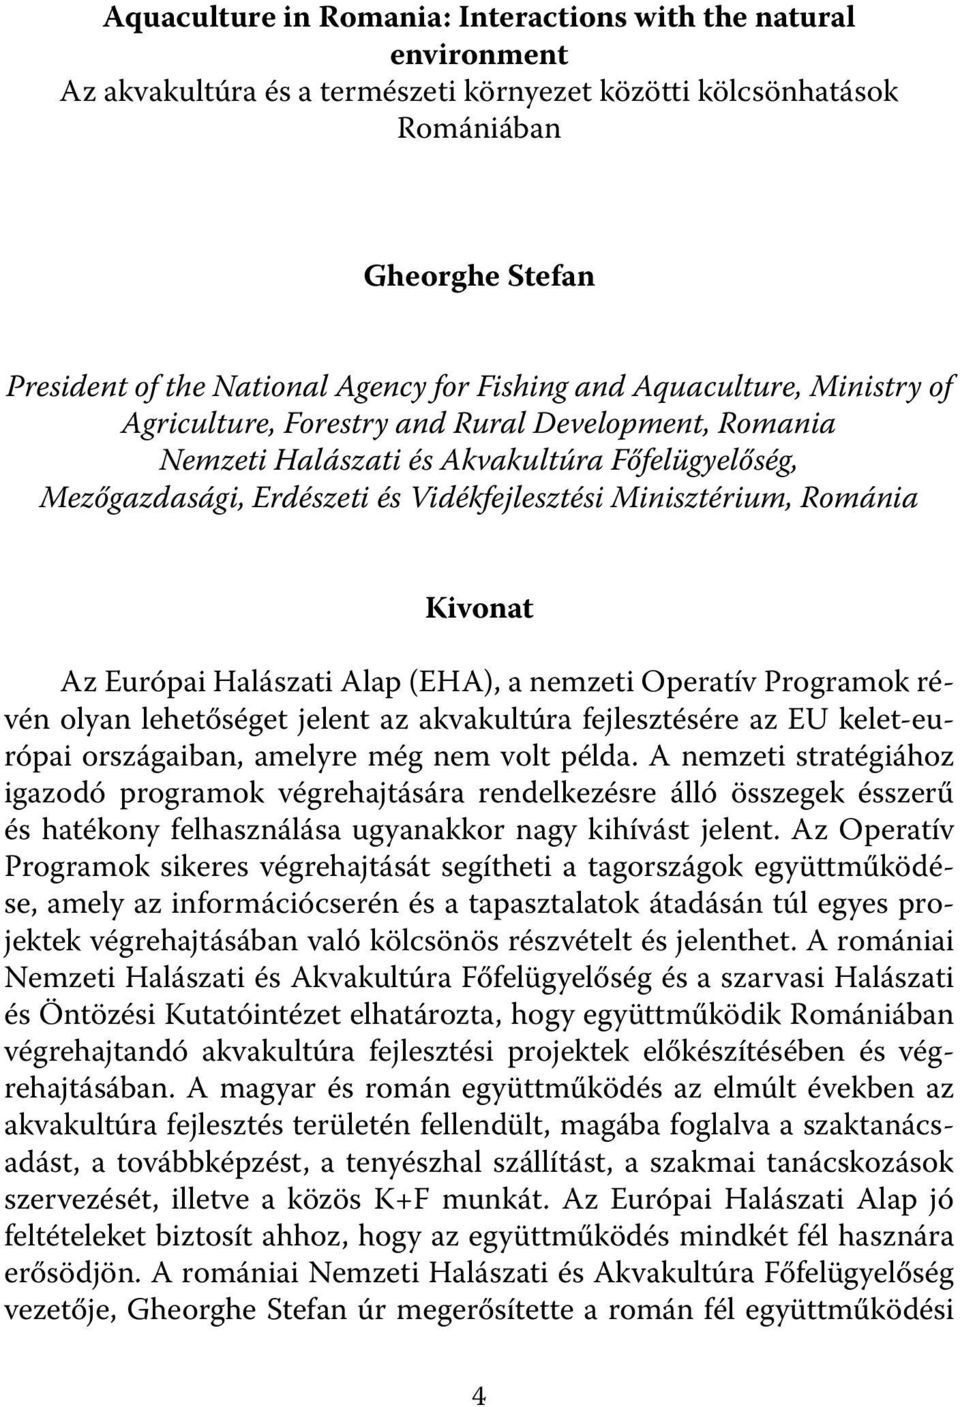 Románia Kivonat Az Európai Halászati Alap (EHA), a nemzeti Operatív Programok révén olyan lehetőséget jelent az akvakultúra fejlesztésére az EU kelet-európai országaiban, amelyre még nem volt példa.